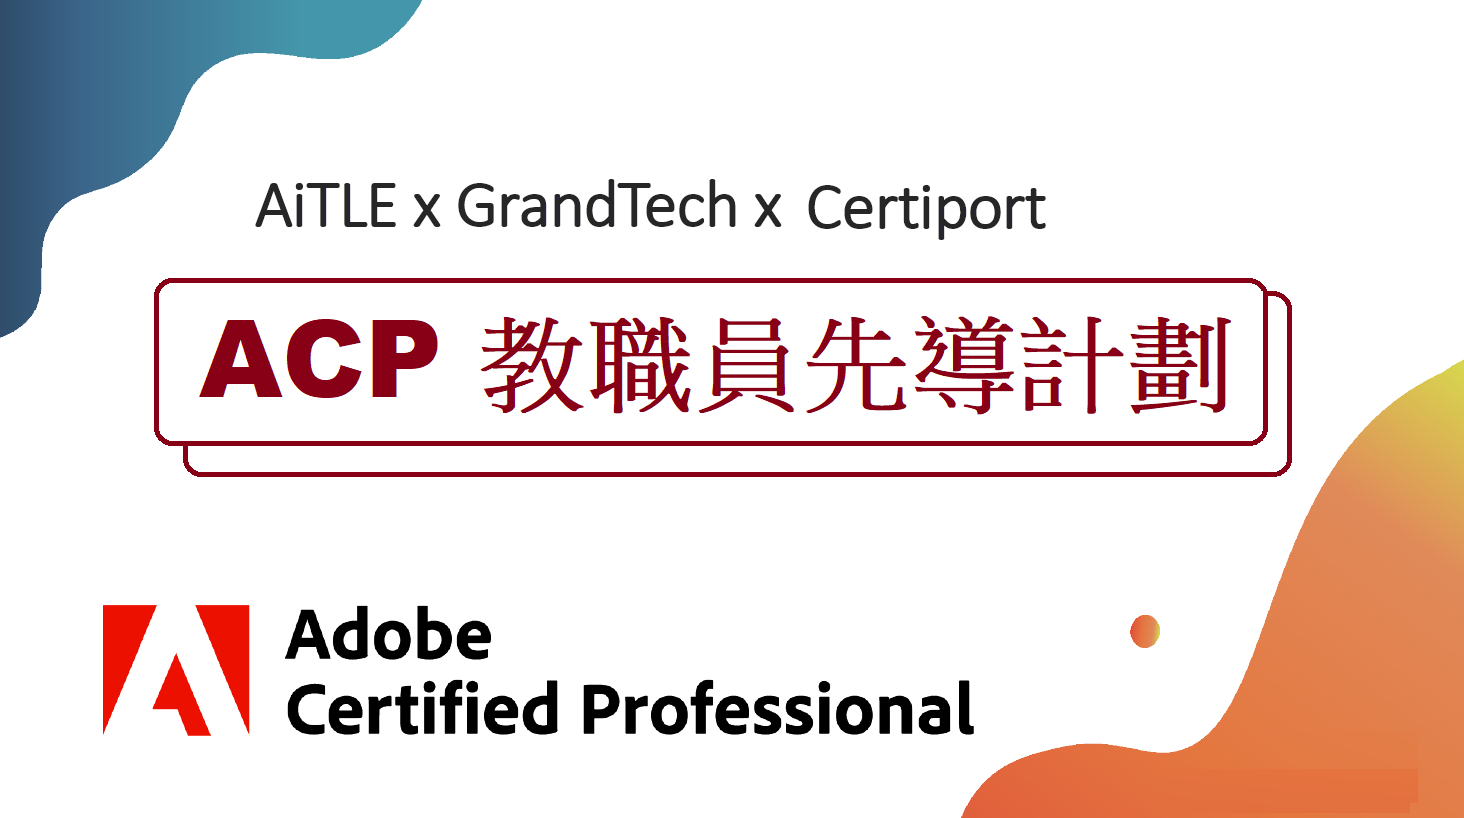 AiTLE x GrandTech x Certiport：Adobe Certified Professional K12 教職員先導計劃～第二階段 – 免費網上教材及練習平台試用！